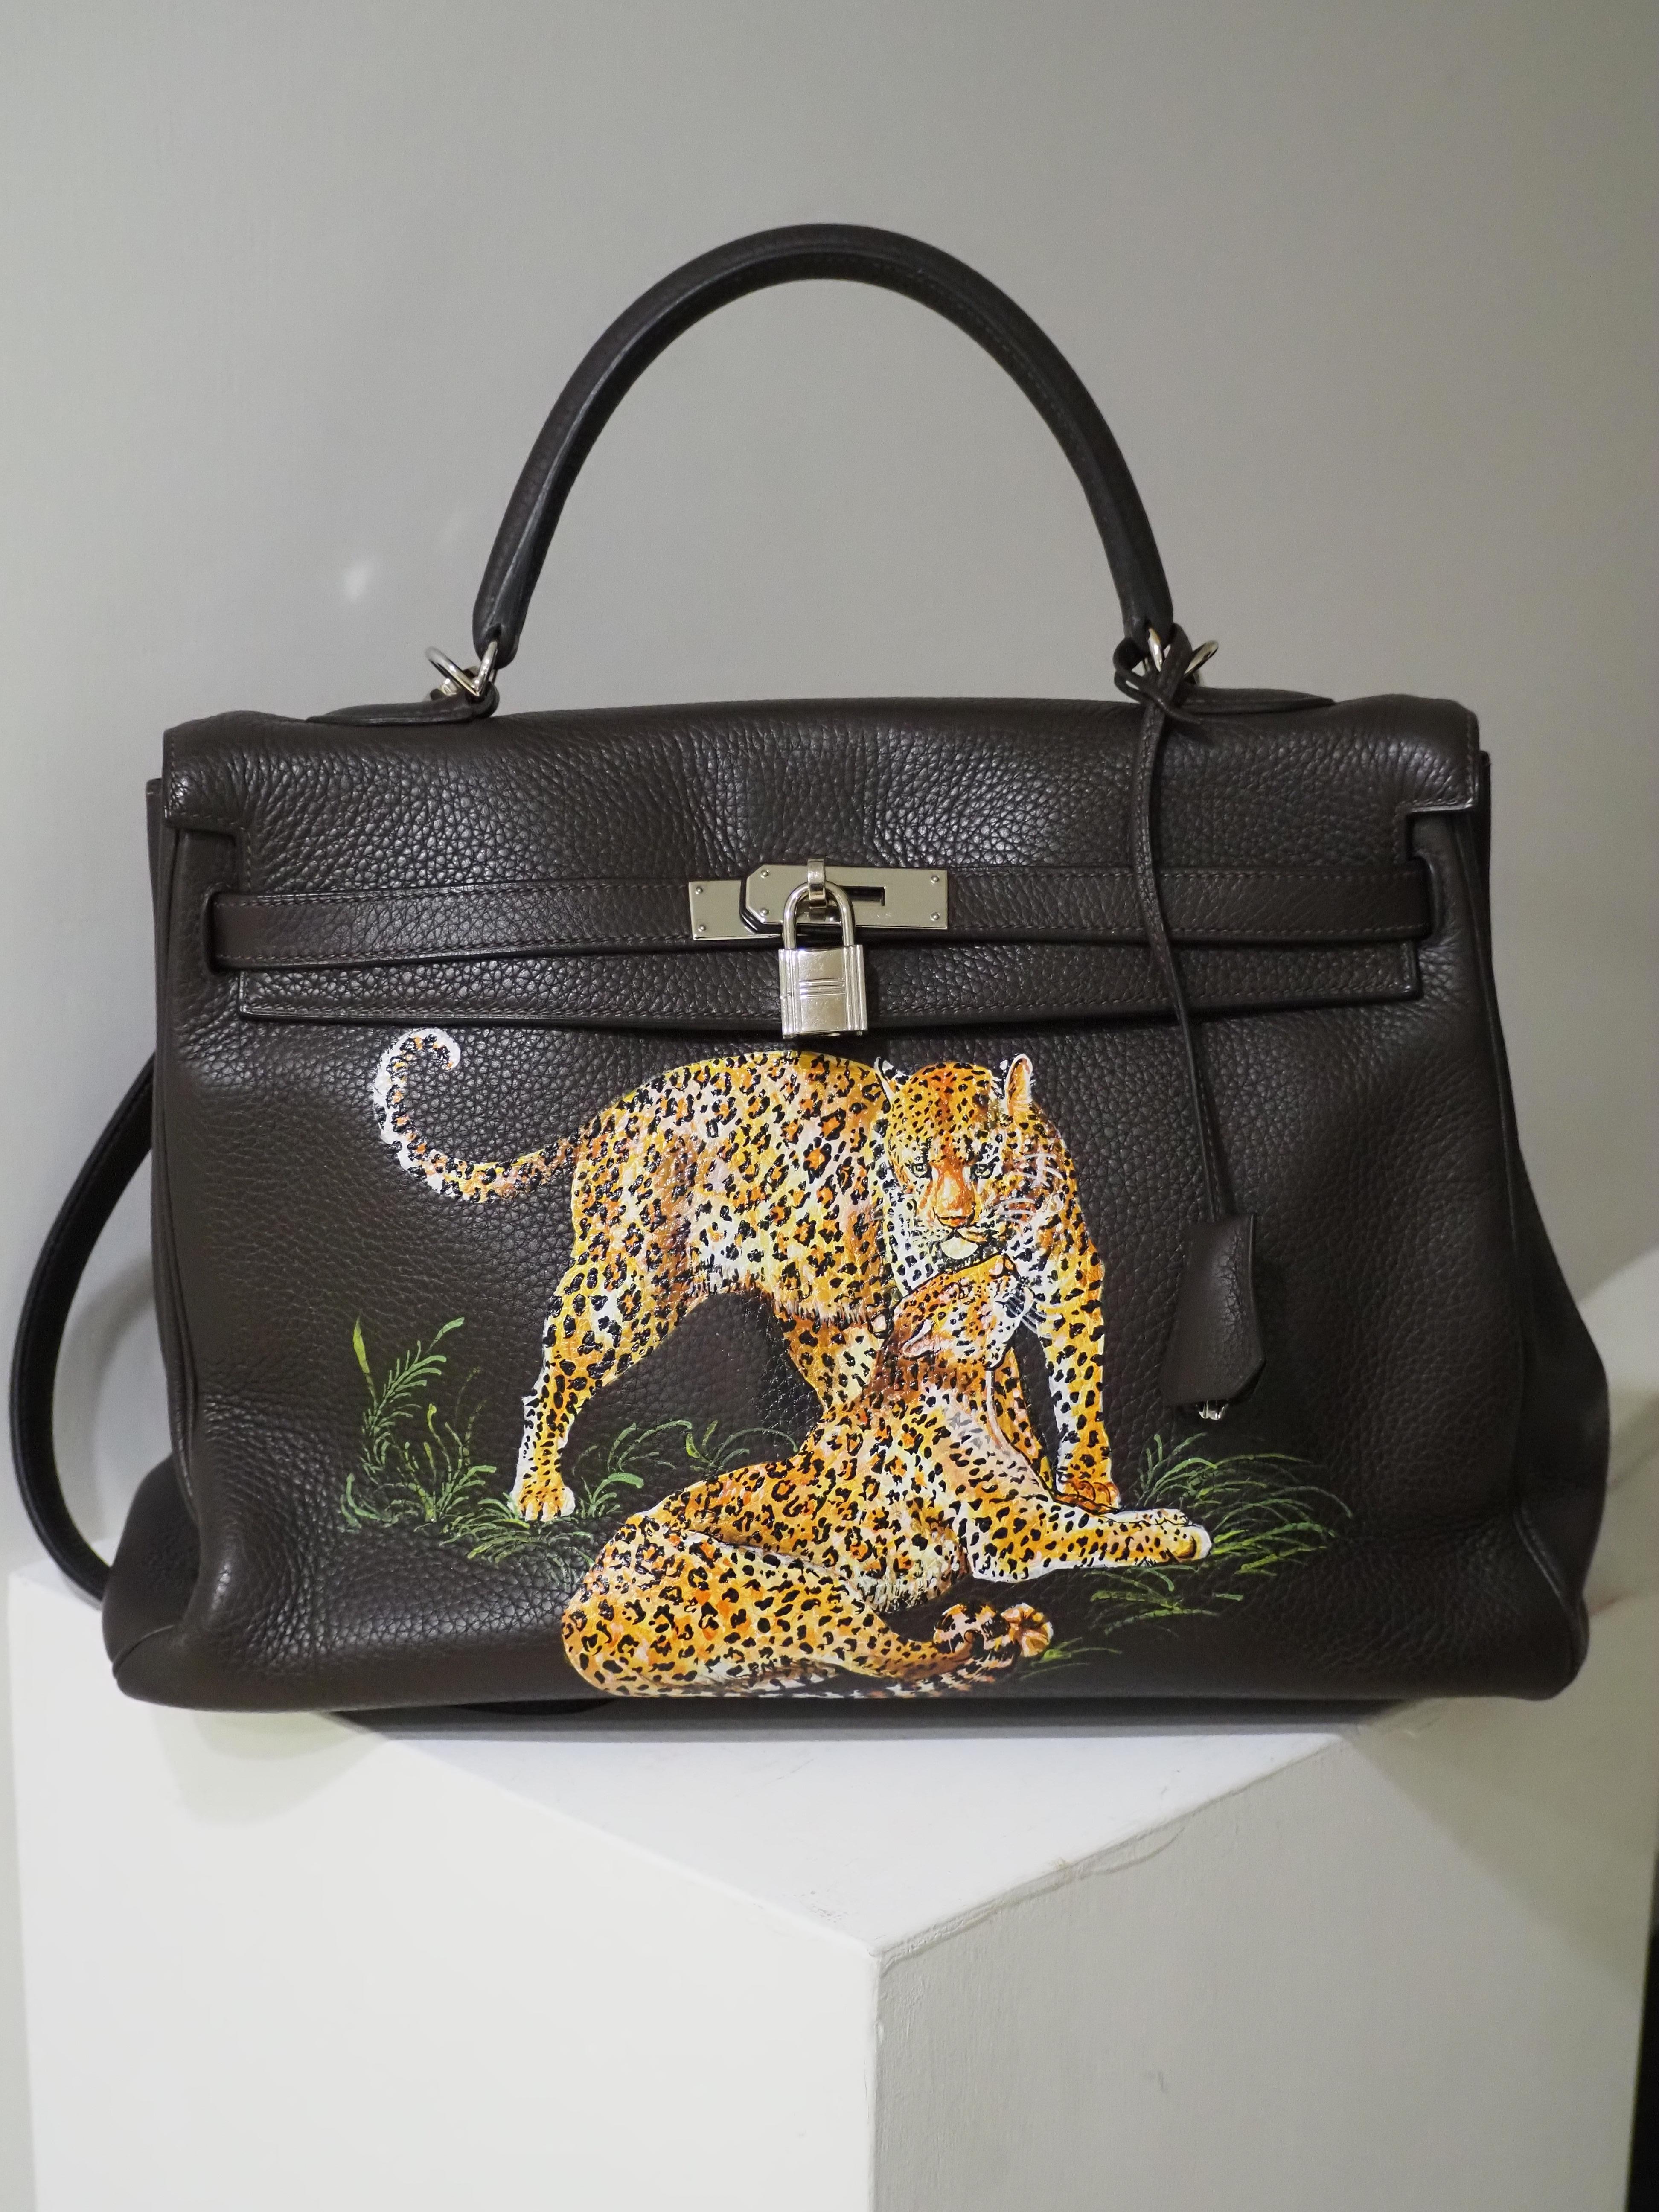 Hermès 35 Brown leather handpainted handbag shoulder bag 3